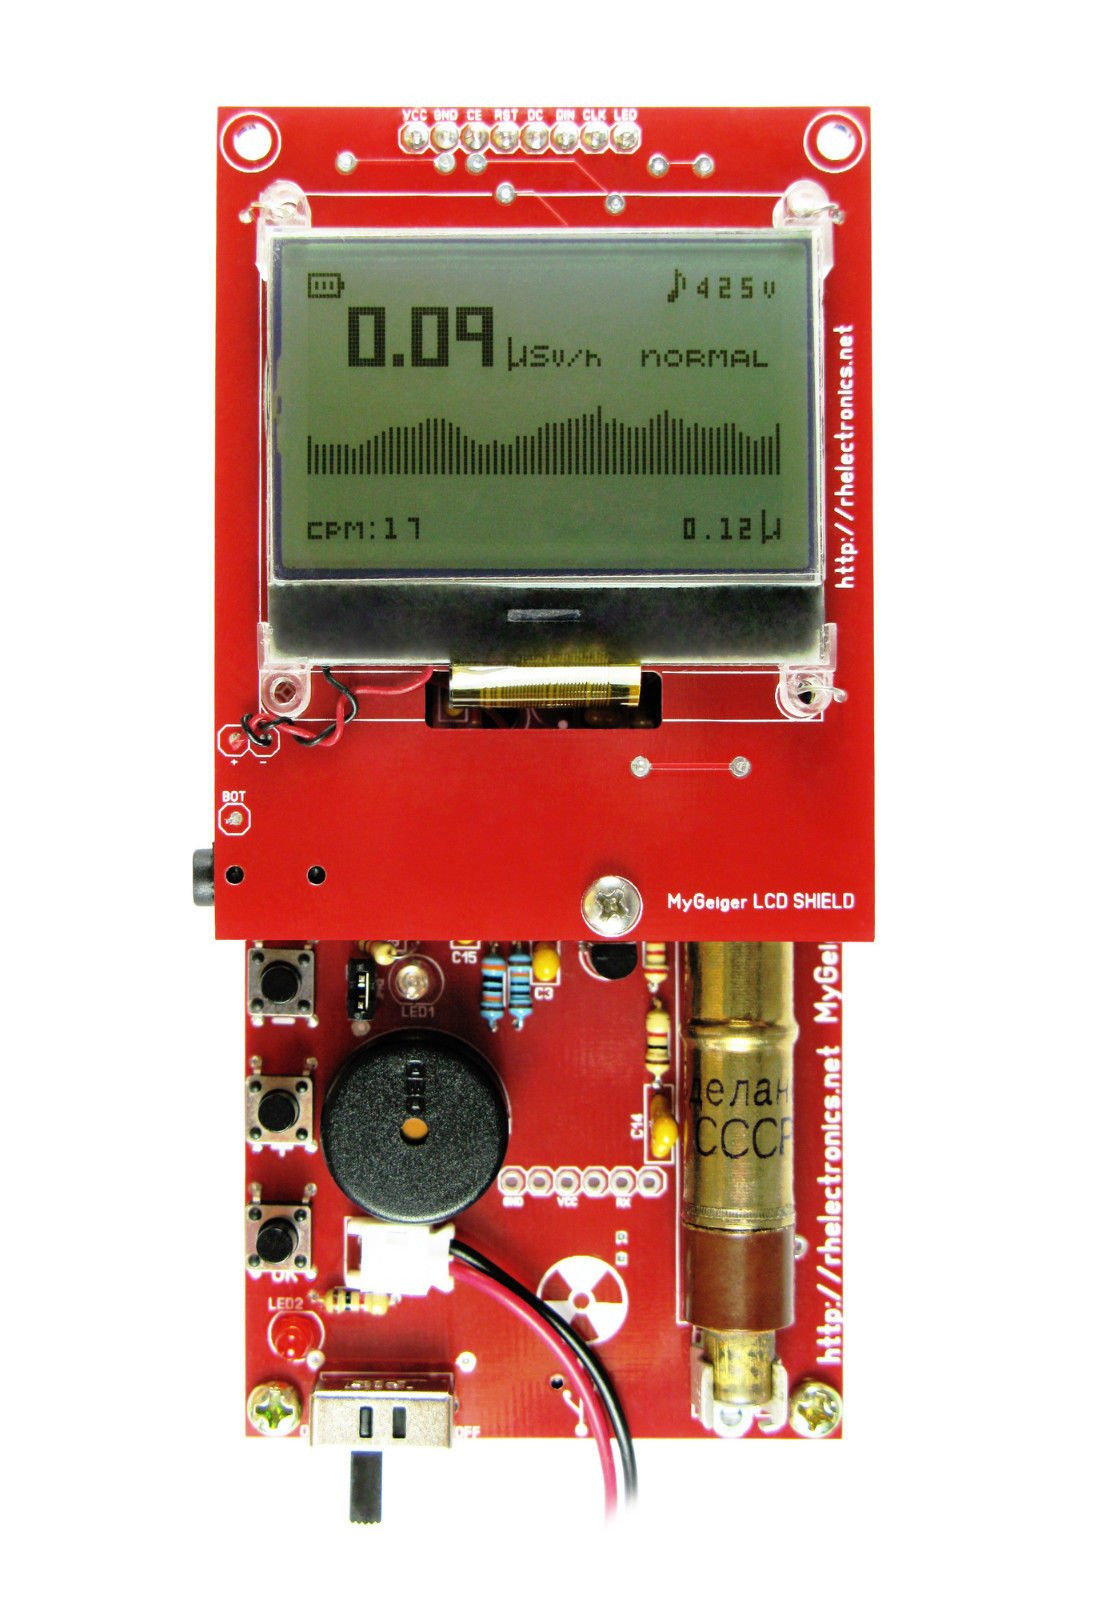 DIY Geiger Counter Kit
 ASSEMBLED MyGeiger ver 2 DIY Geiger Counter Kit from